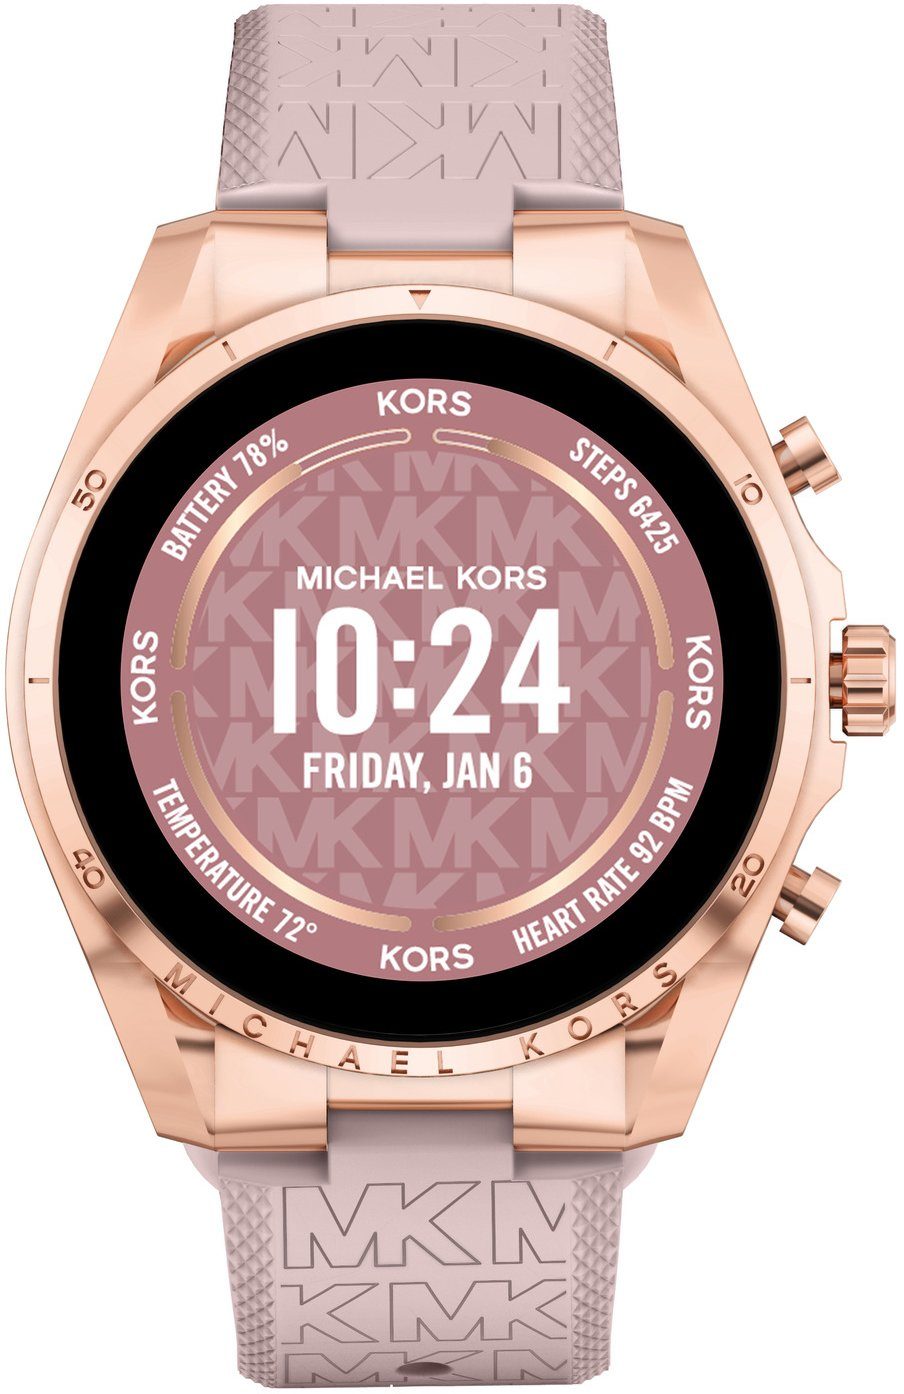 MICHAEL KORS ACCESS Gen 6 Bradshaw, MKT5150 Smartwatch (Wear OS by Google)  online kaufen | OTTO